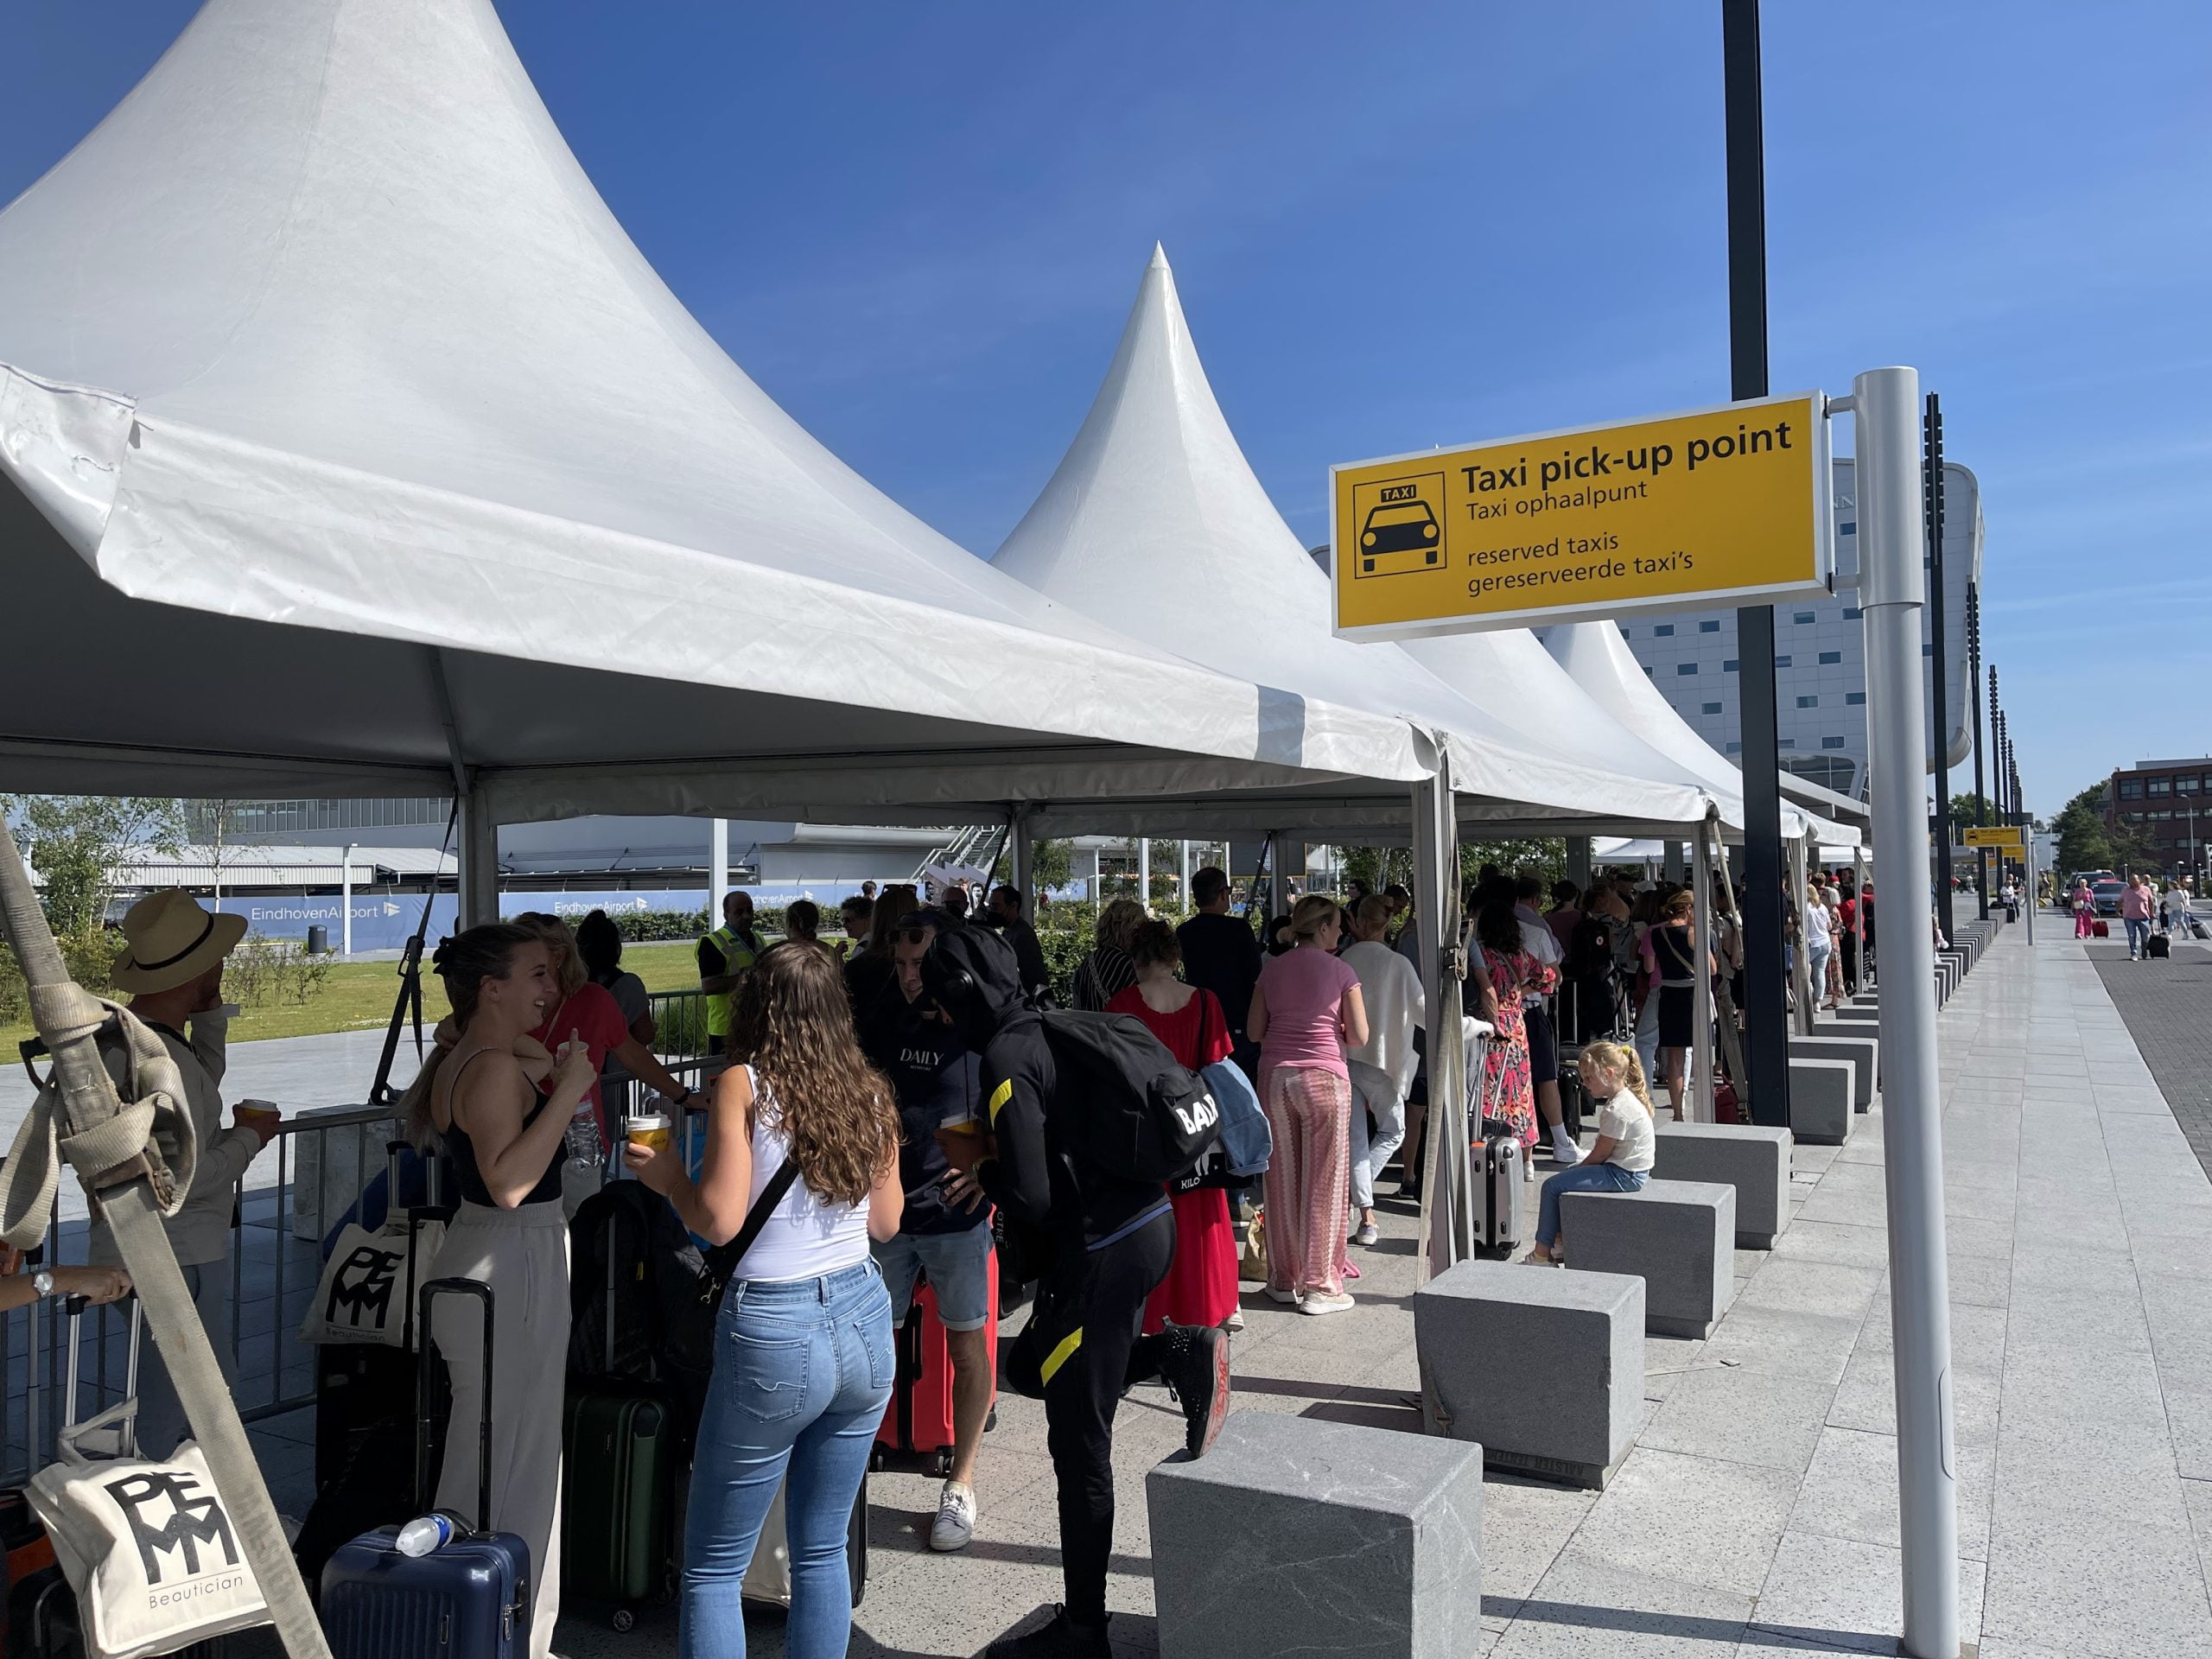 Eindhovens flygplats kommer att kompensera resenärerna